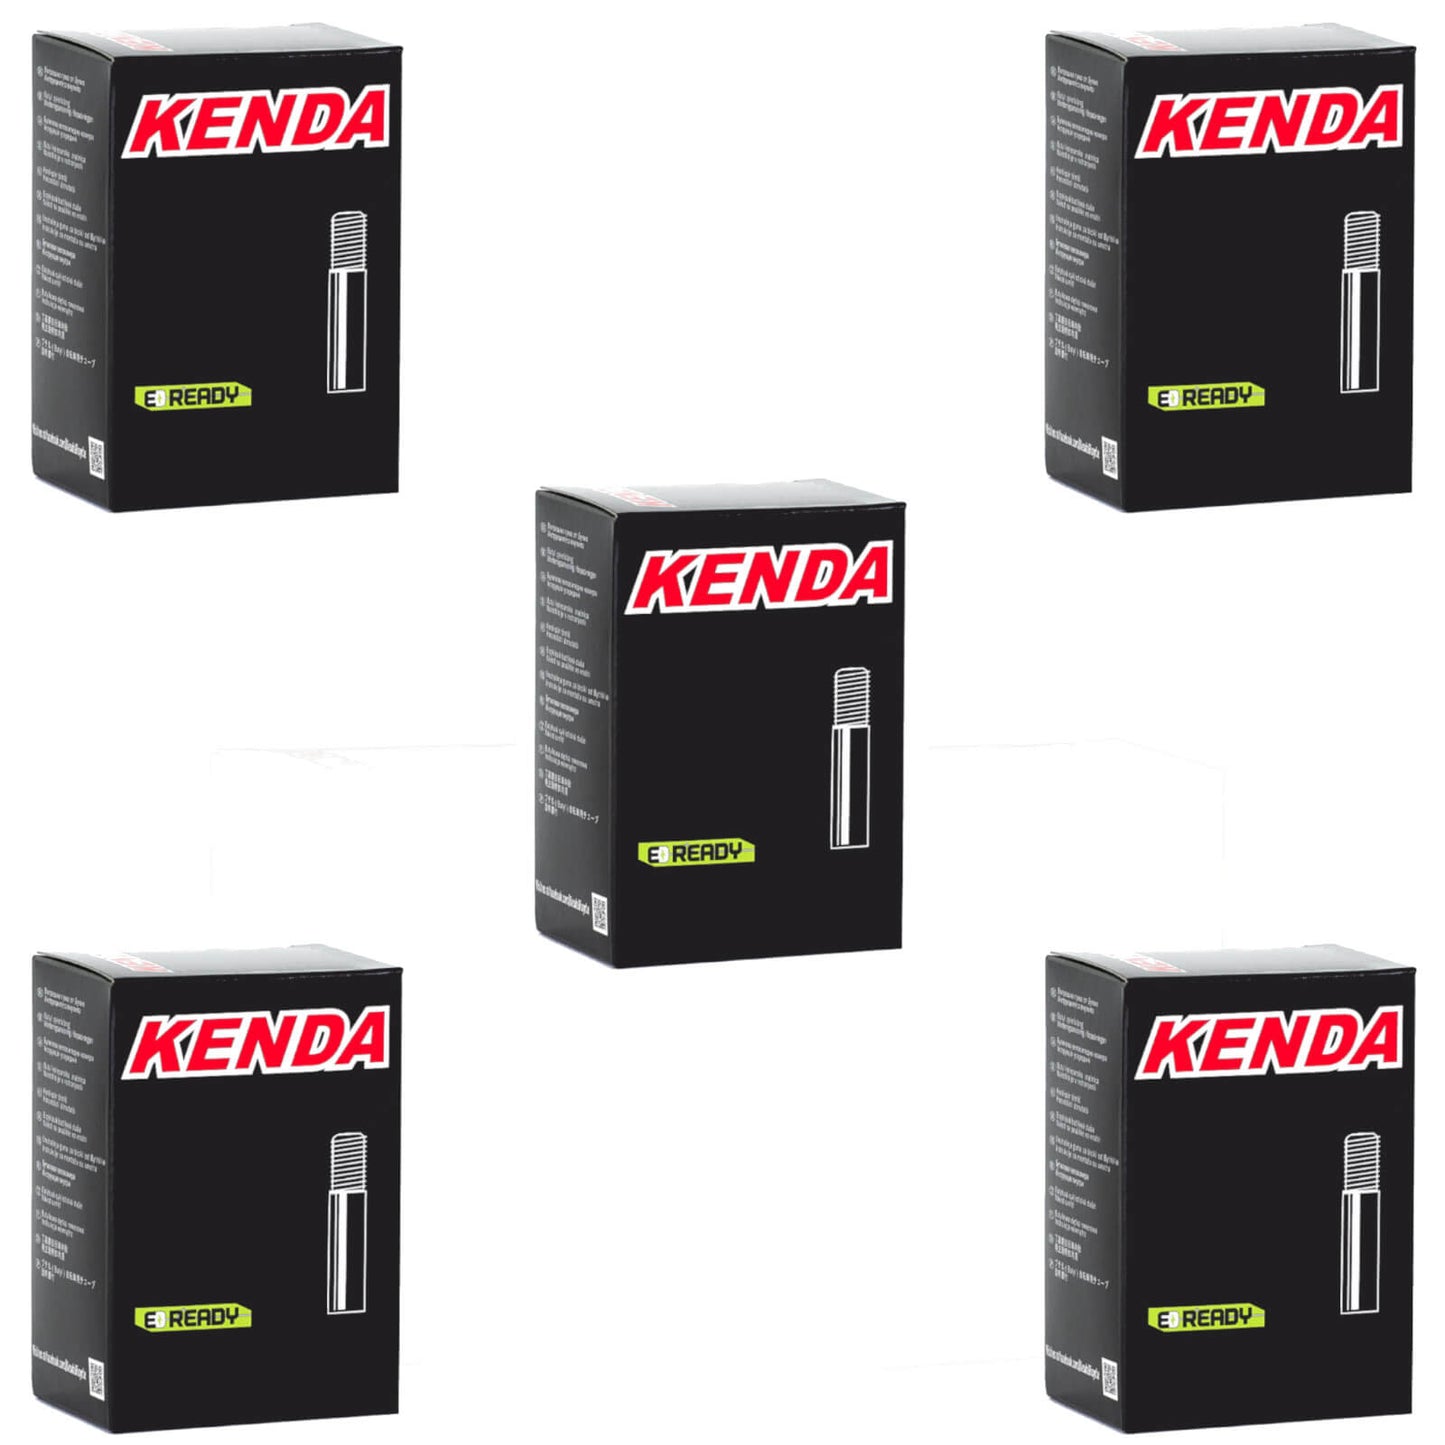 Kenda 26x2.75-3.0" 26 Inch Schrader Valve Bike Inner Tube Pack of 5